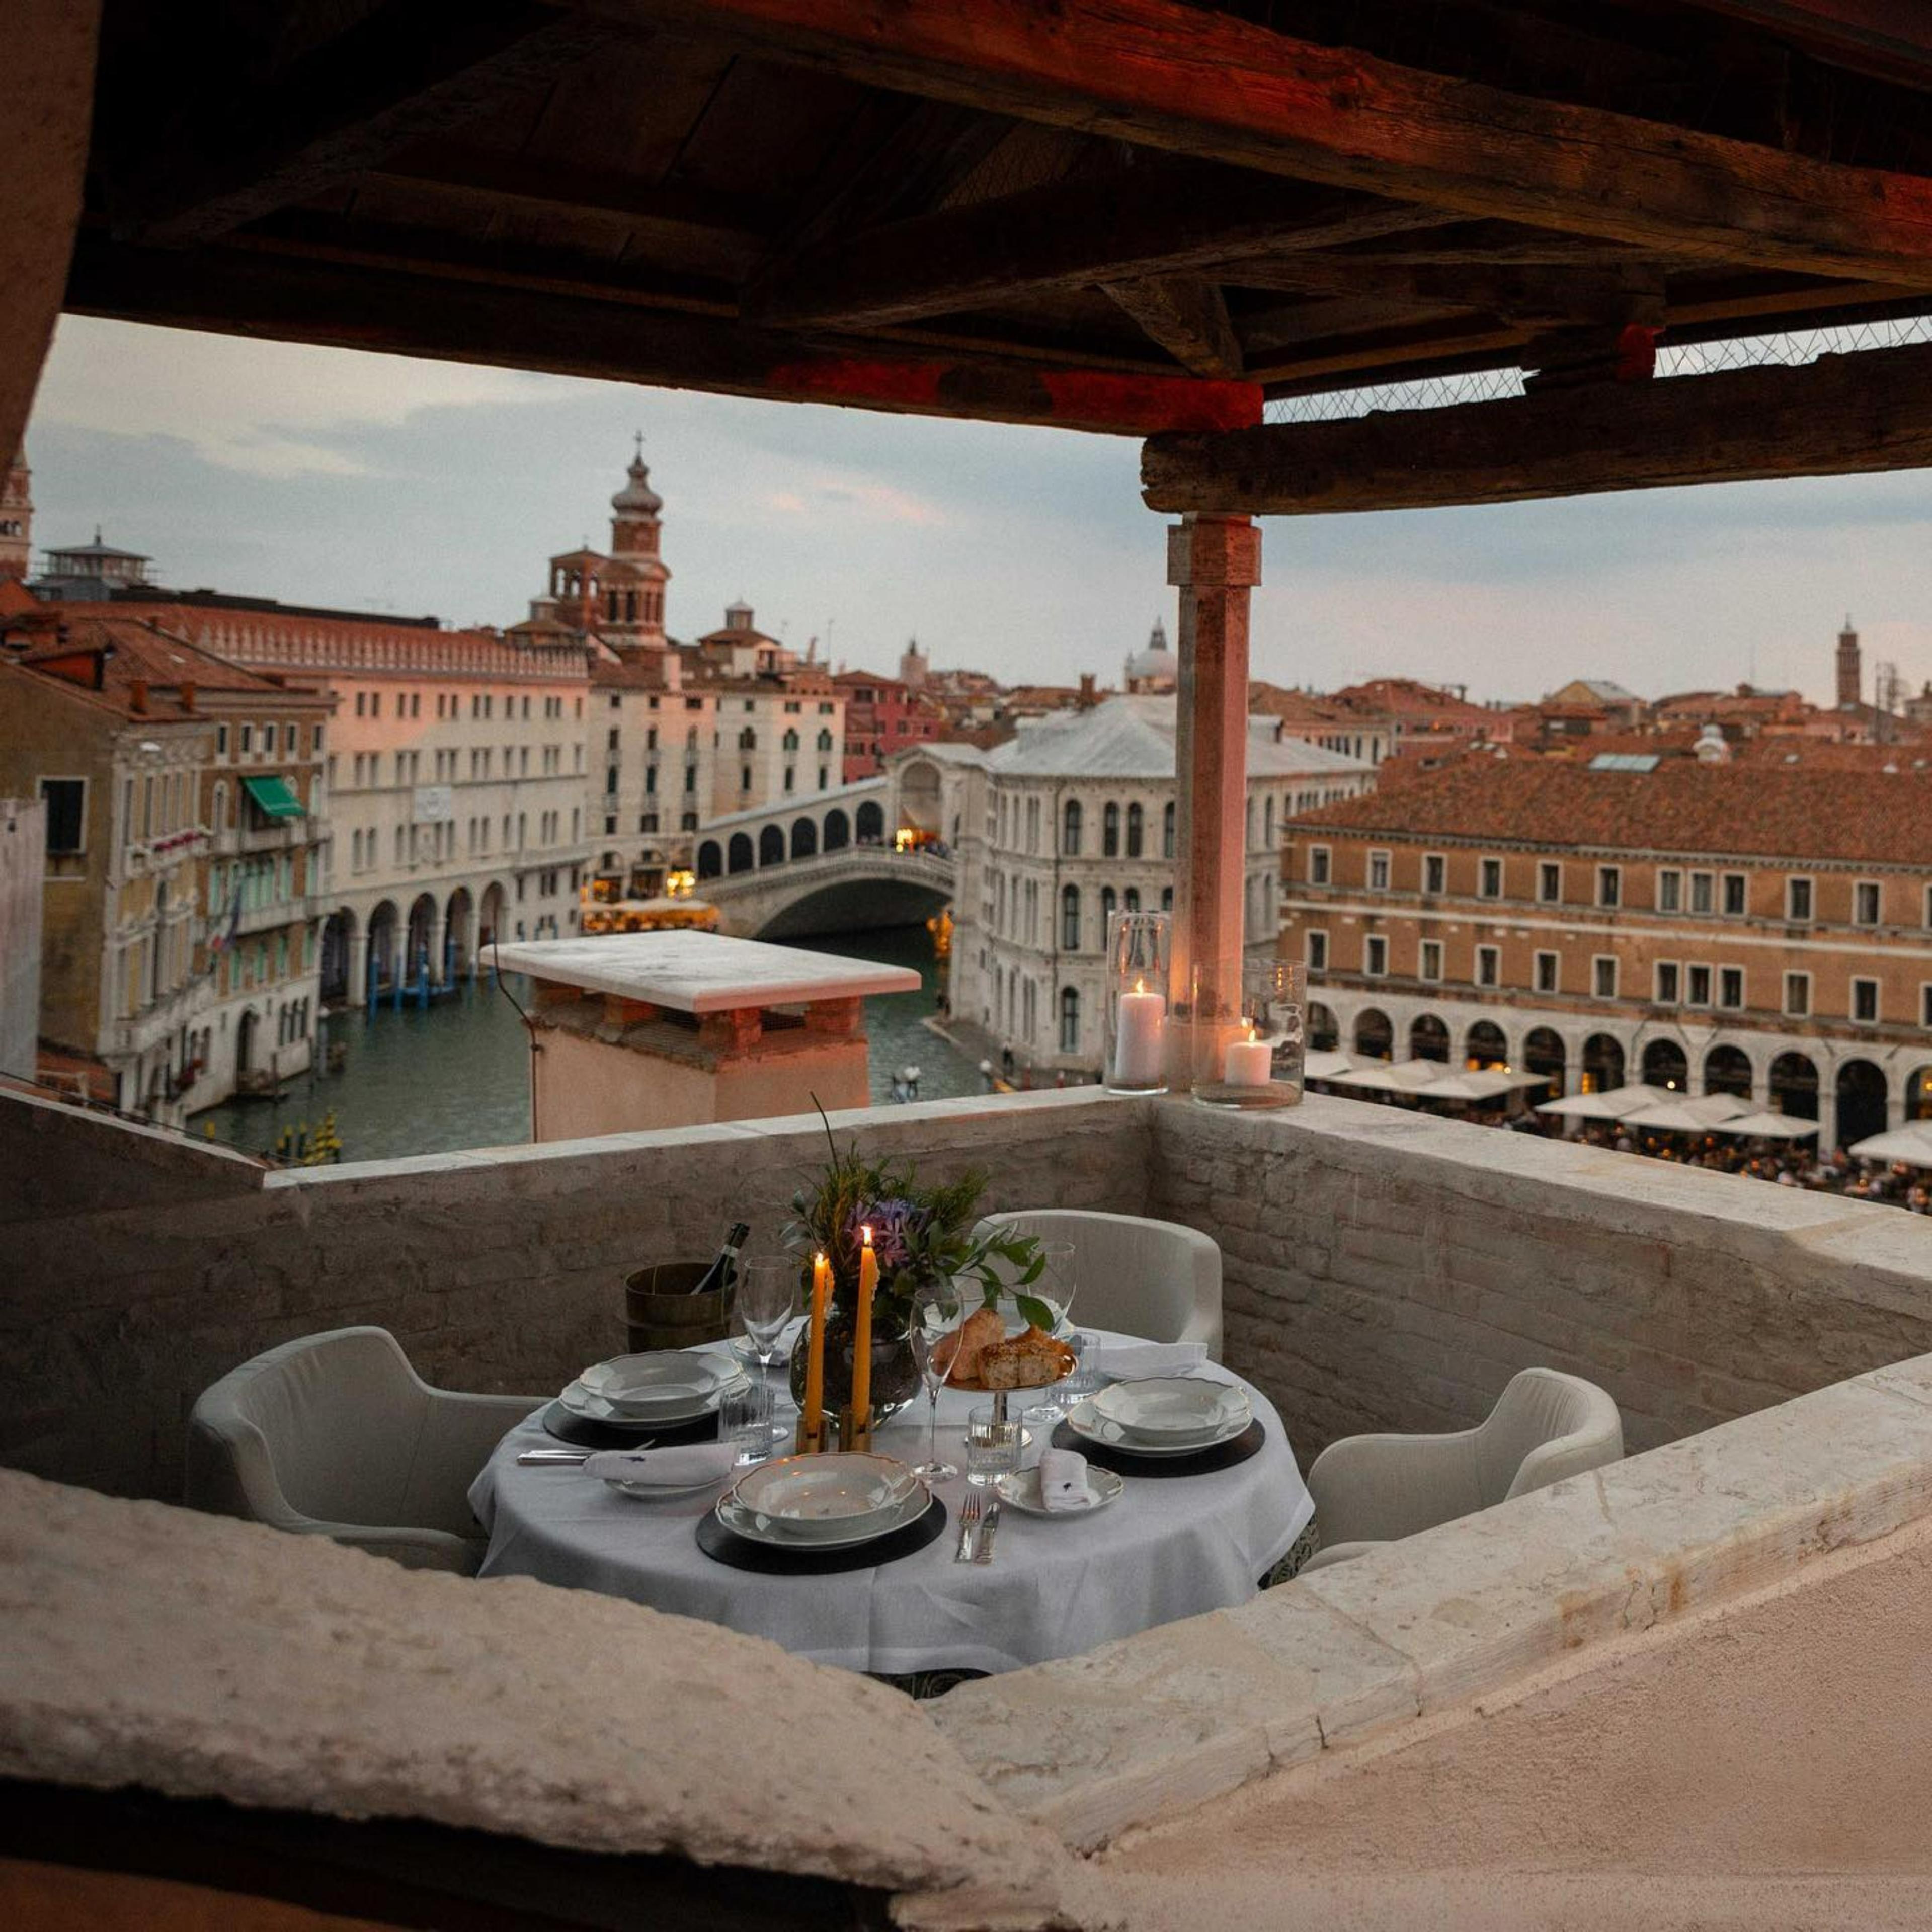 The Venice Venice Hotel